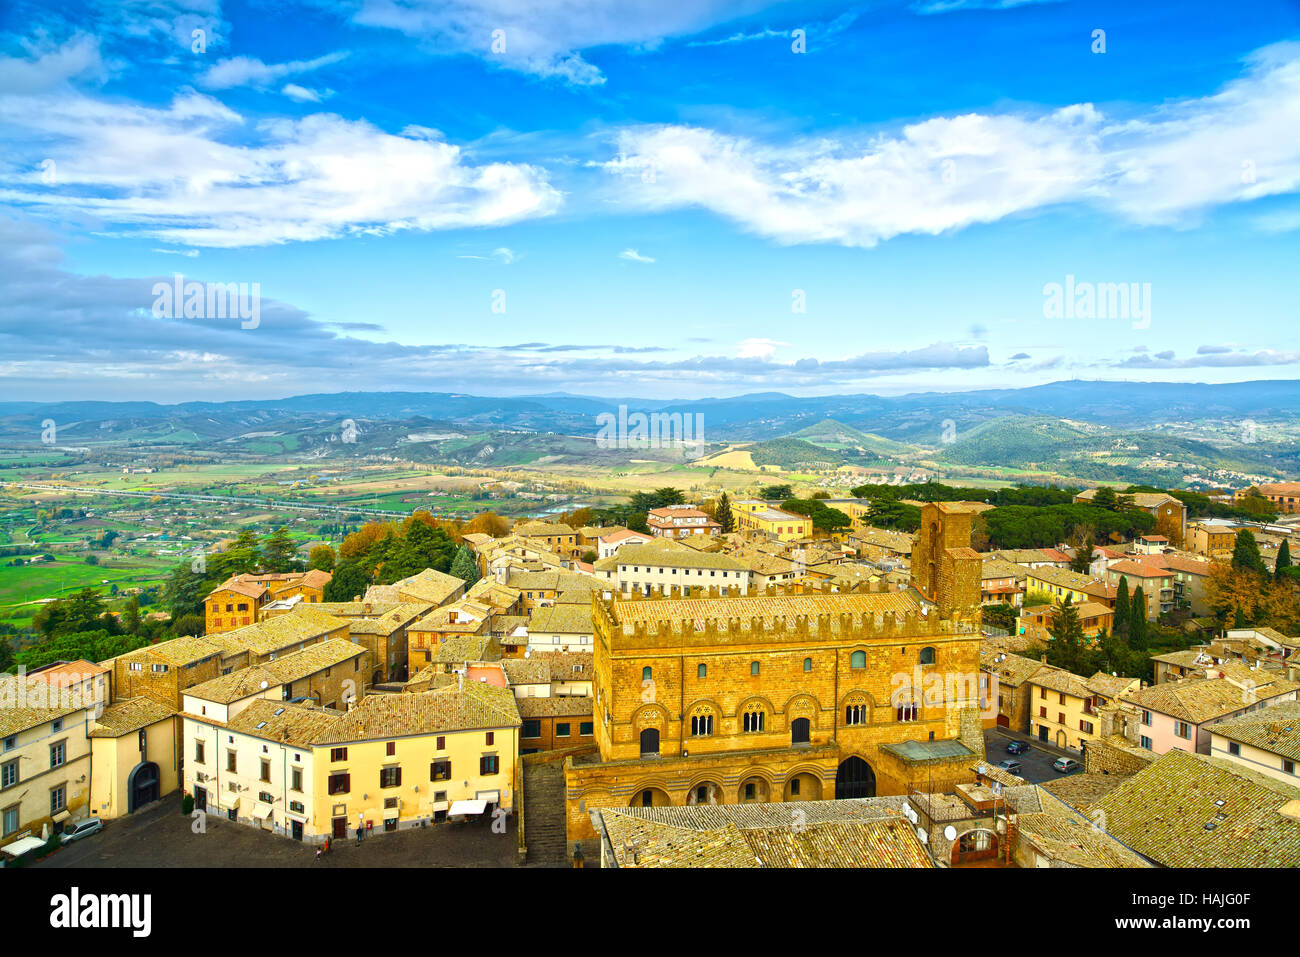 Ville médiévale d'Orvieto vue panoramique vue aérienne. L'Ombrie, Italie, Europe. Banque D'Images